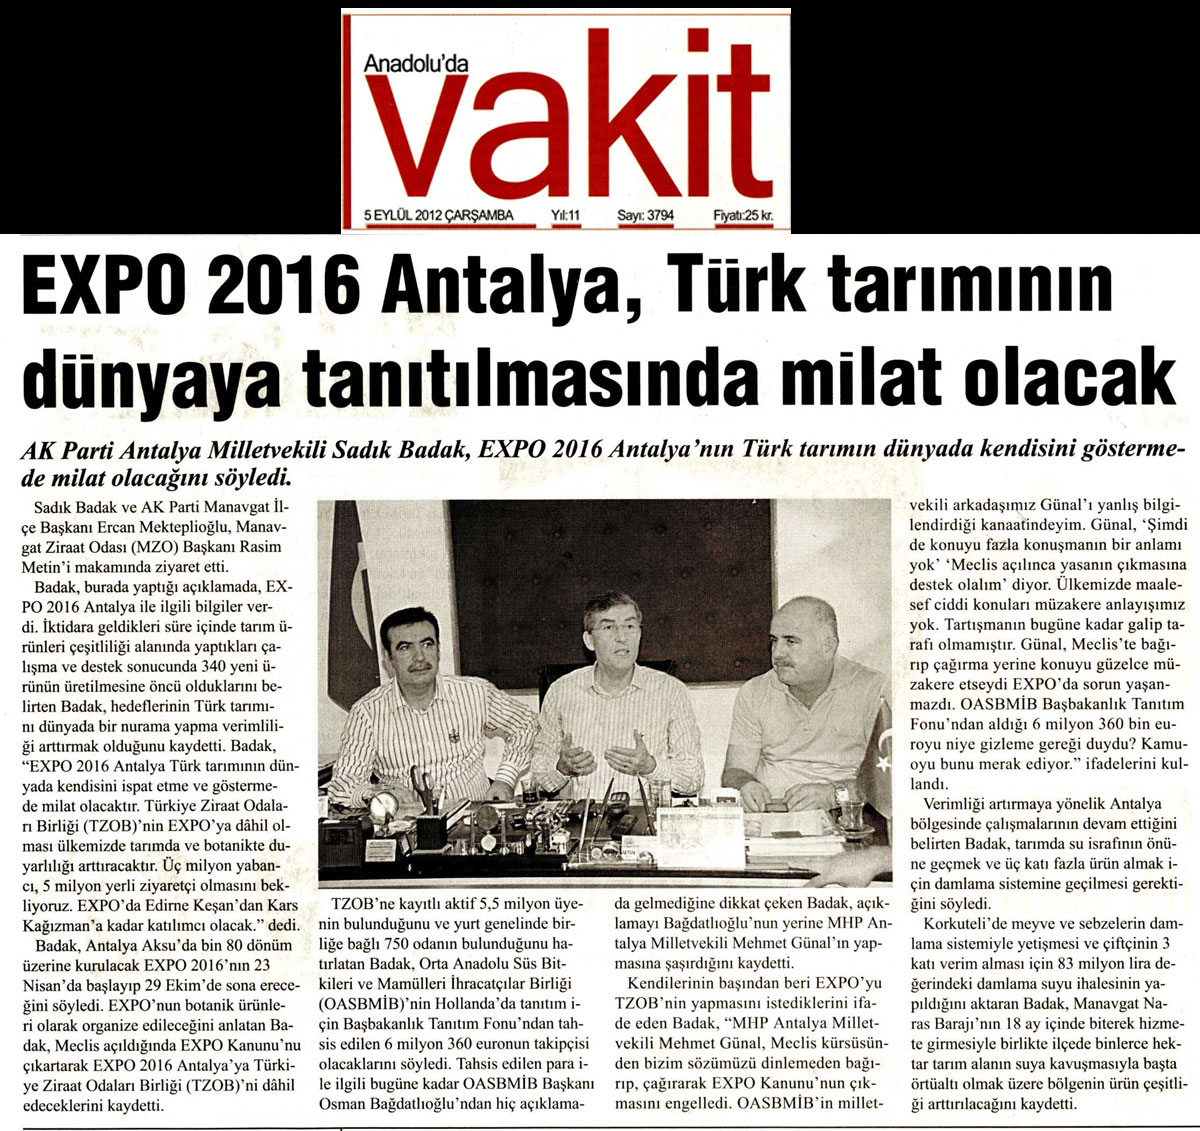 Anadolu'da Vakit - Expo 2016 Antalya, Türk Tarımının Dünyaya Tanıtılmasında Milat Olacak - 5 Eylül 2012